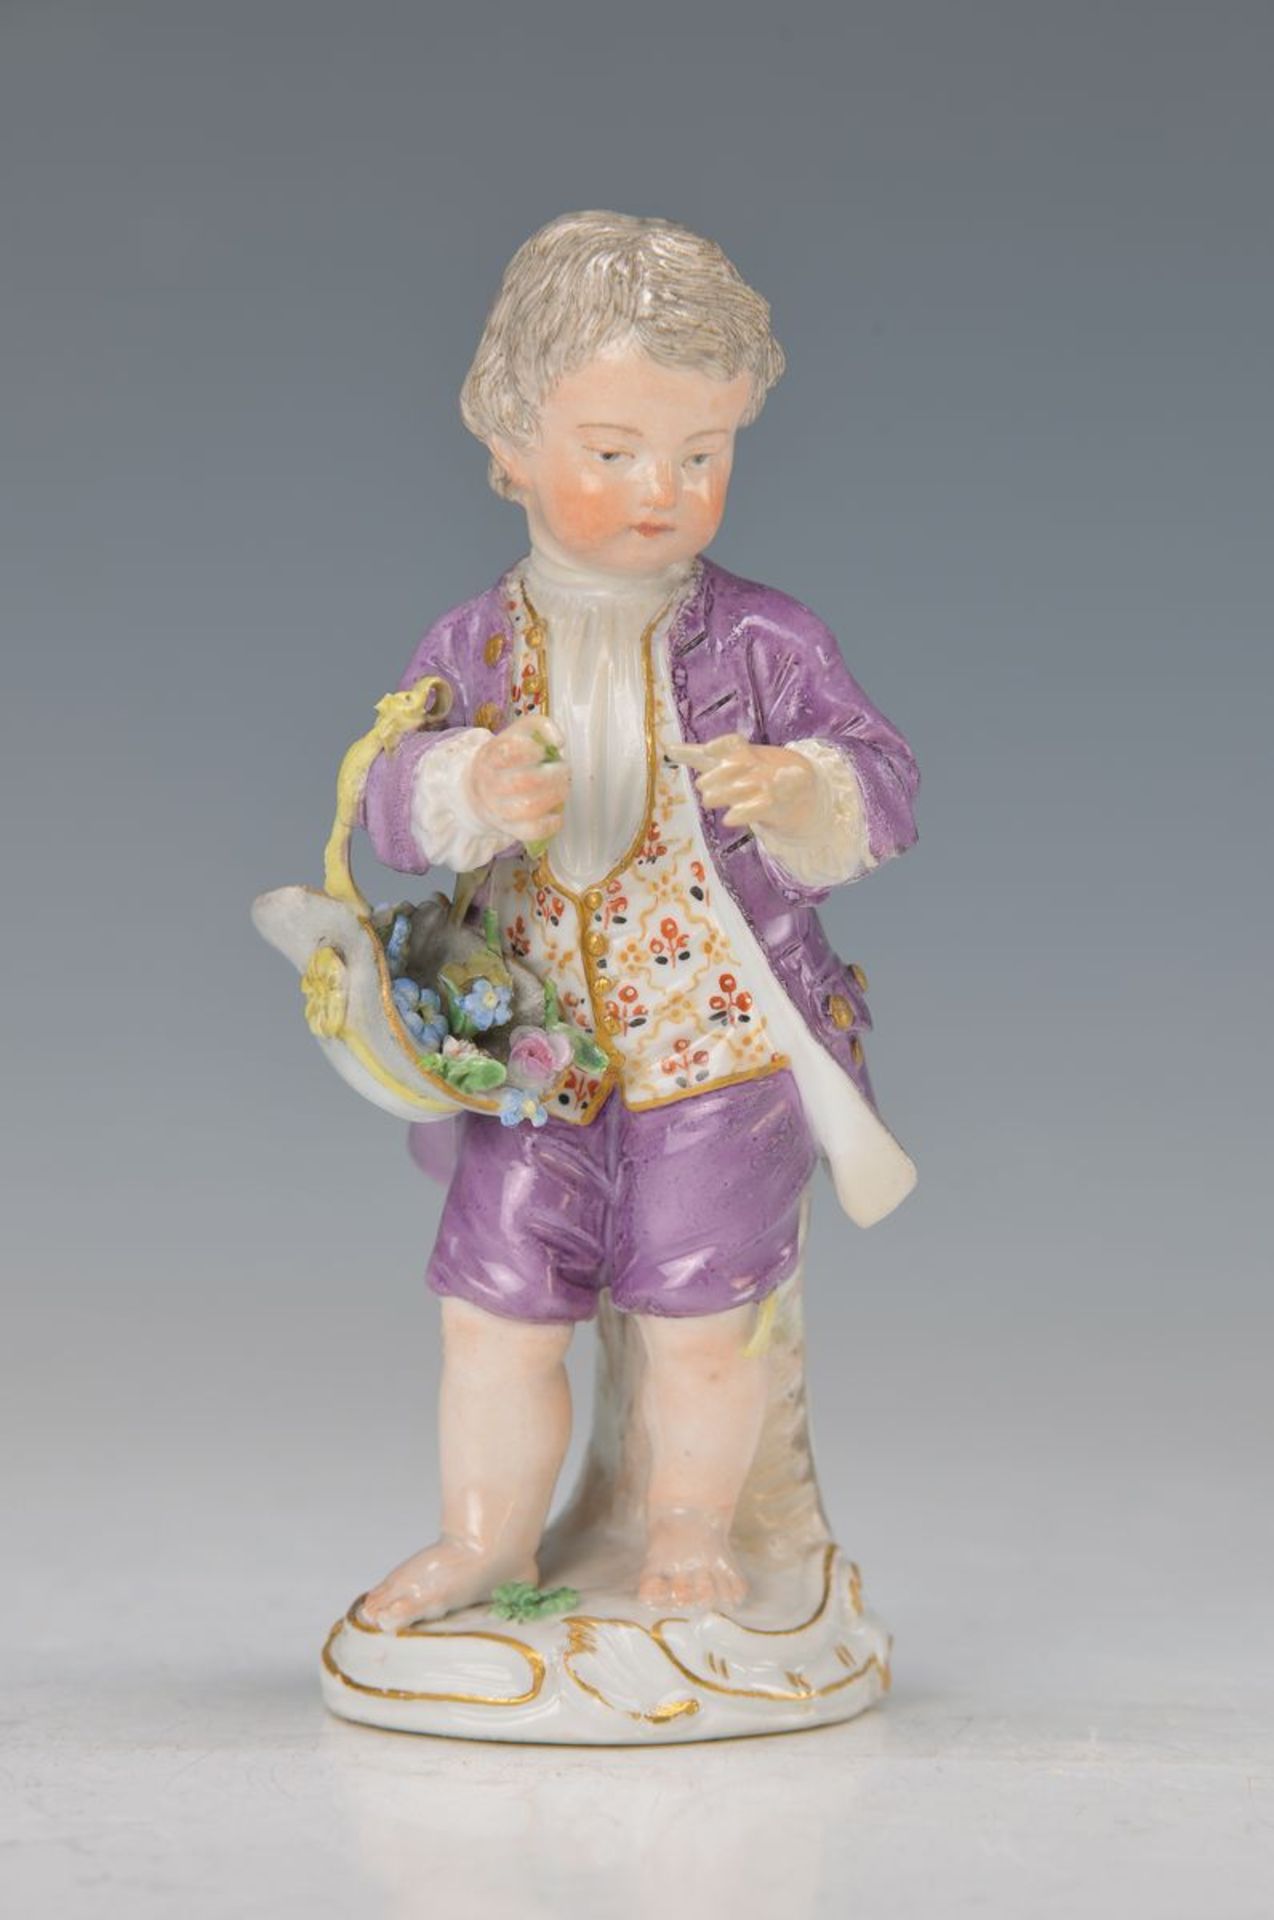 figurine, Meissen, around 1760/65, gardener child with flowers in hat, designed by of J.J.